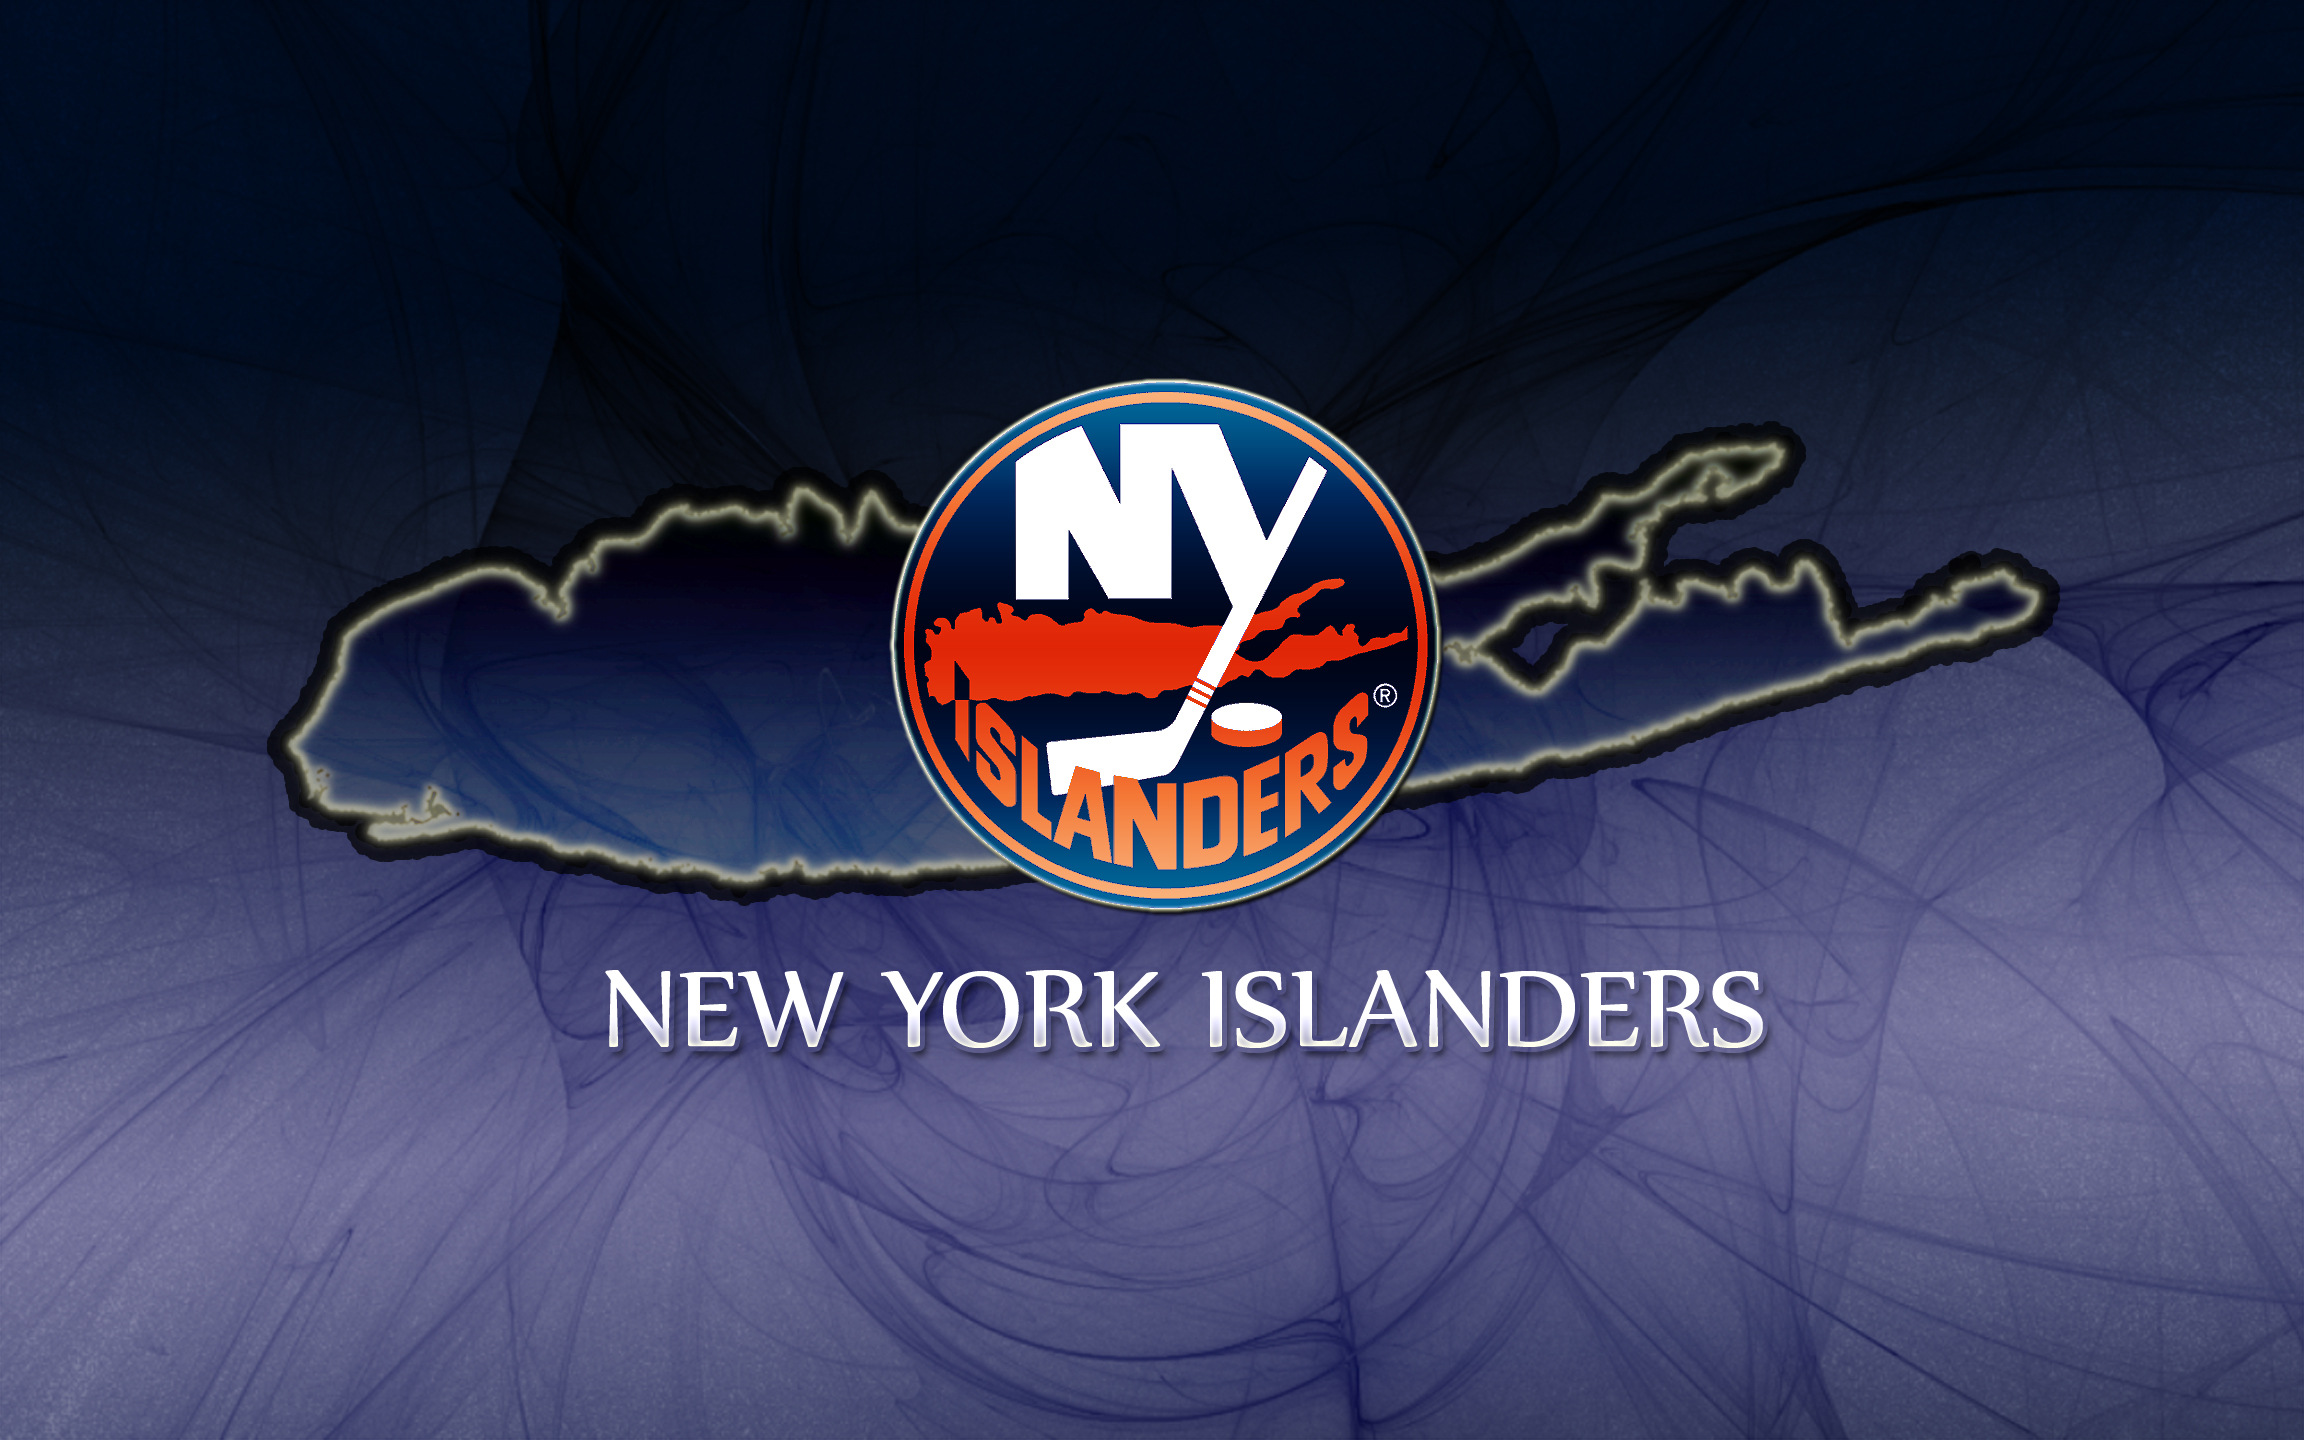 New York Islanders wallpapers New York Islanders background   Page 4